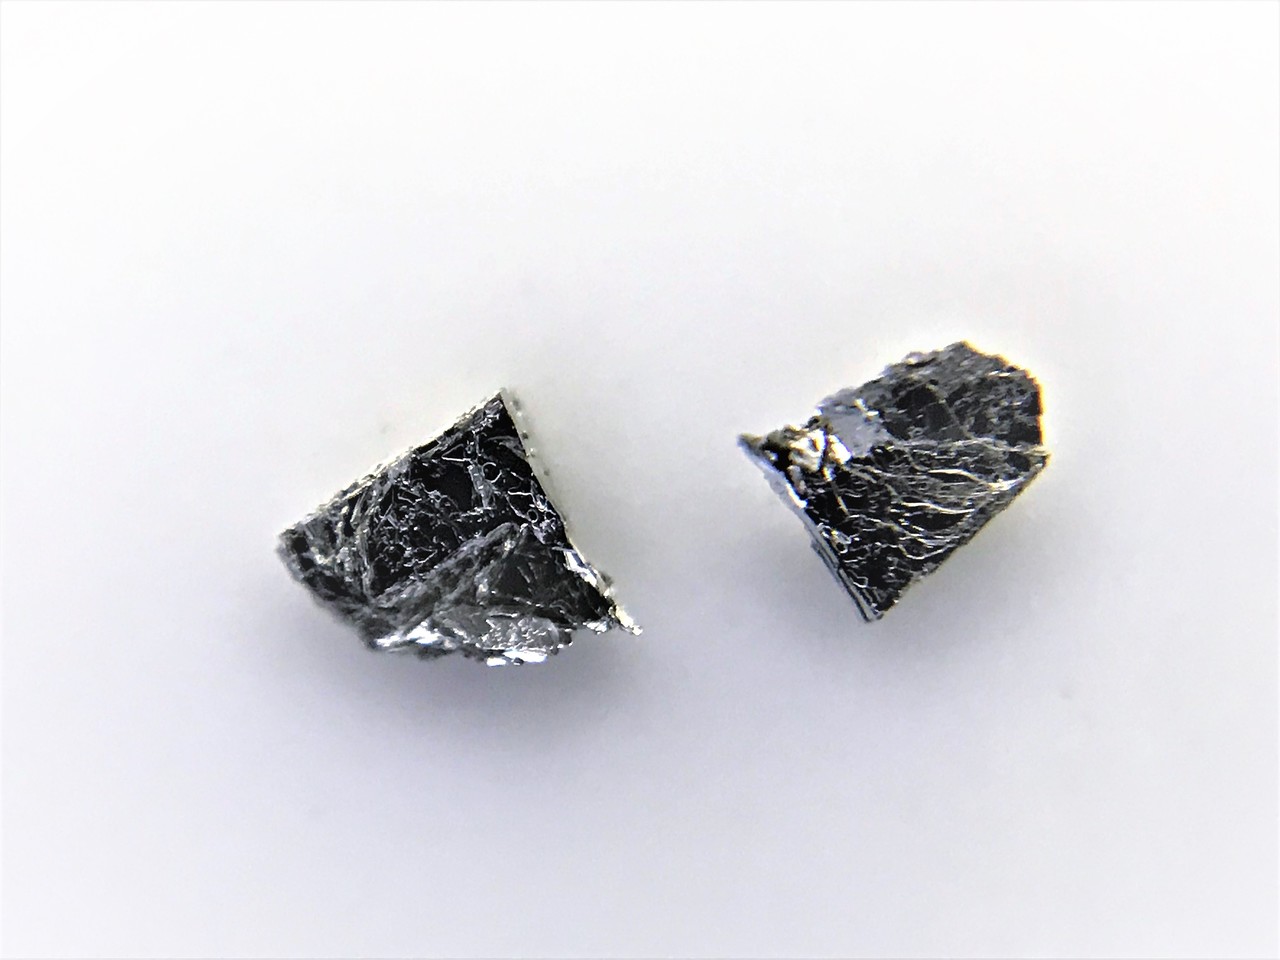 PdTe2 crystals 二碲化钯晶体 (Palladium Ditelluride)